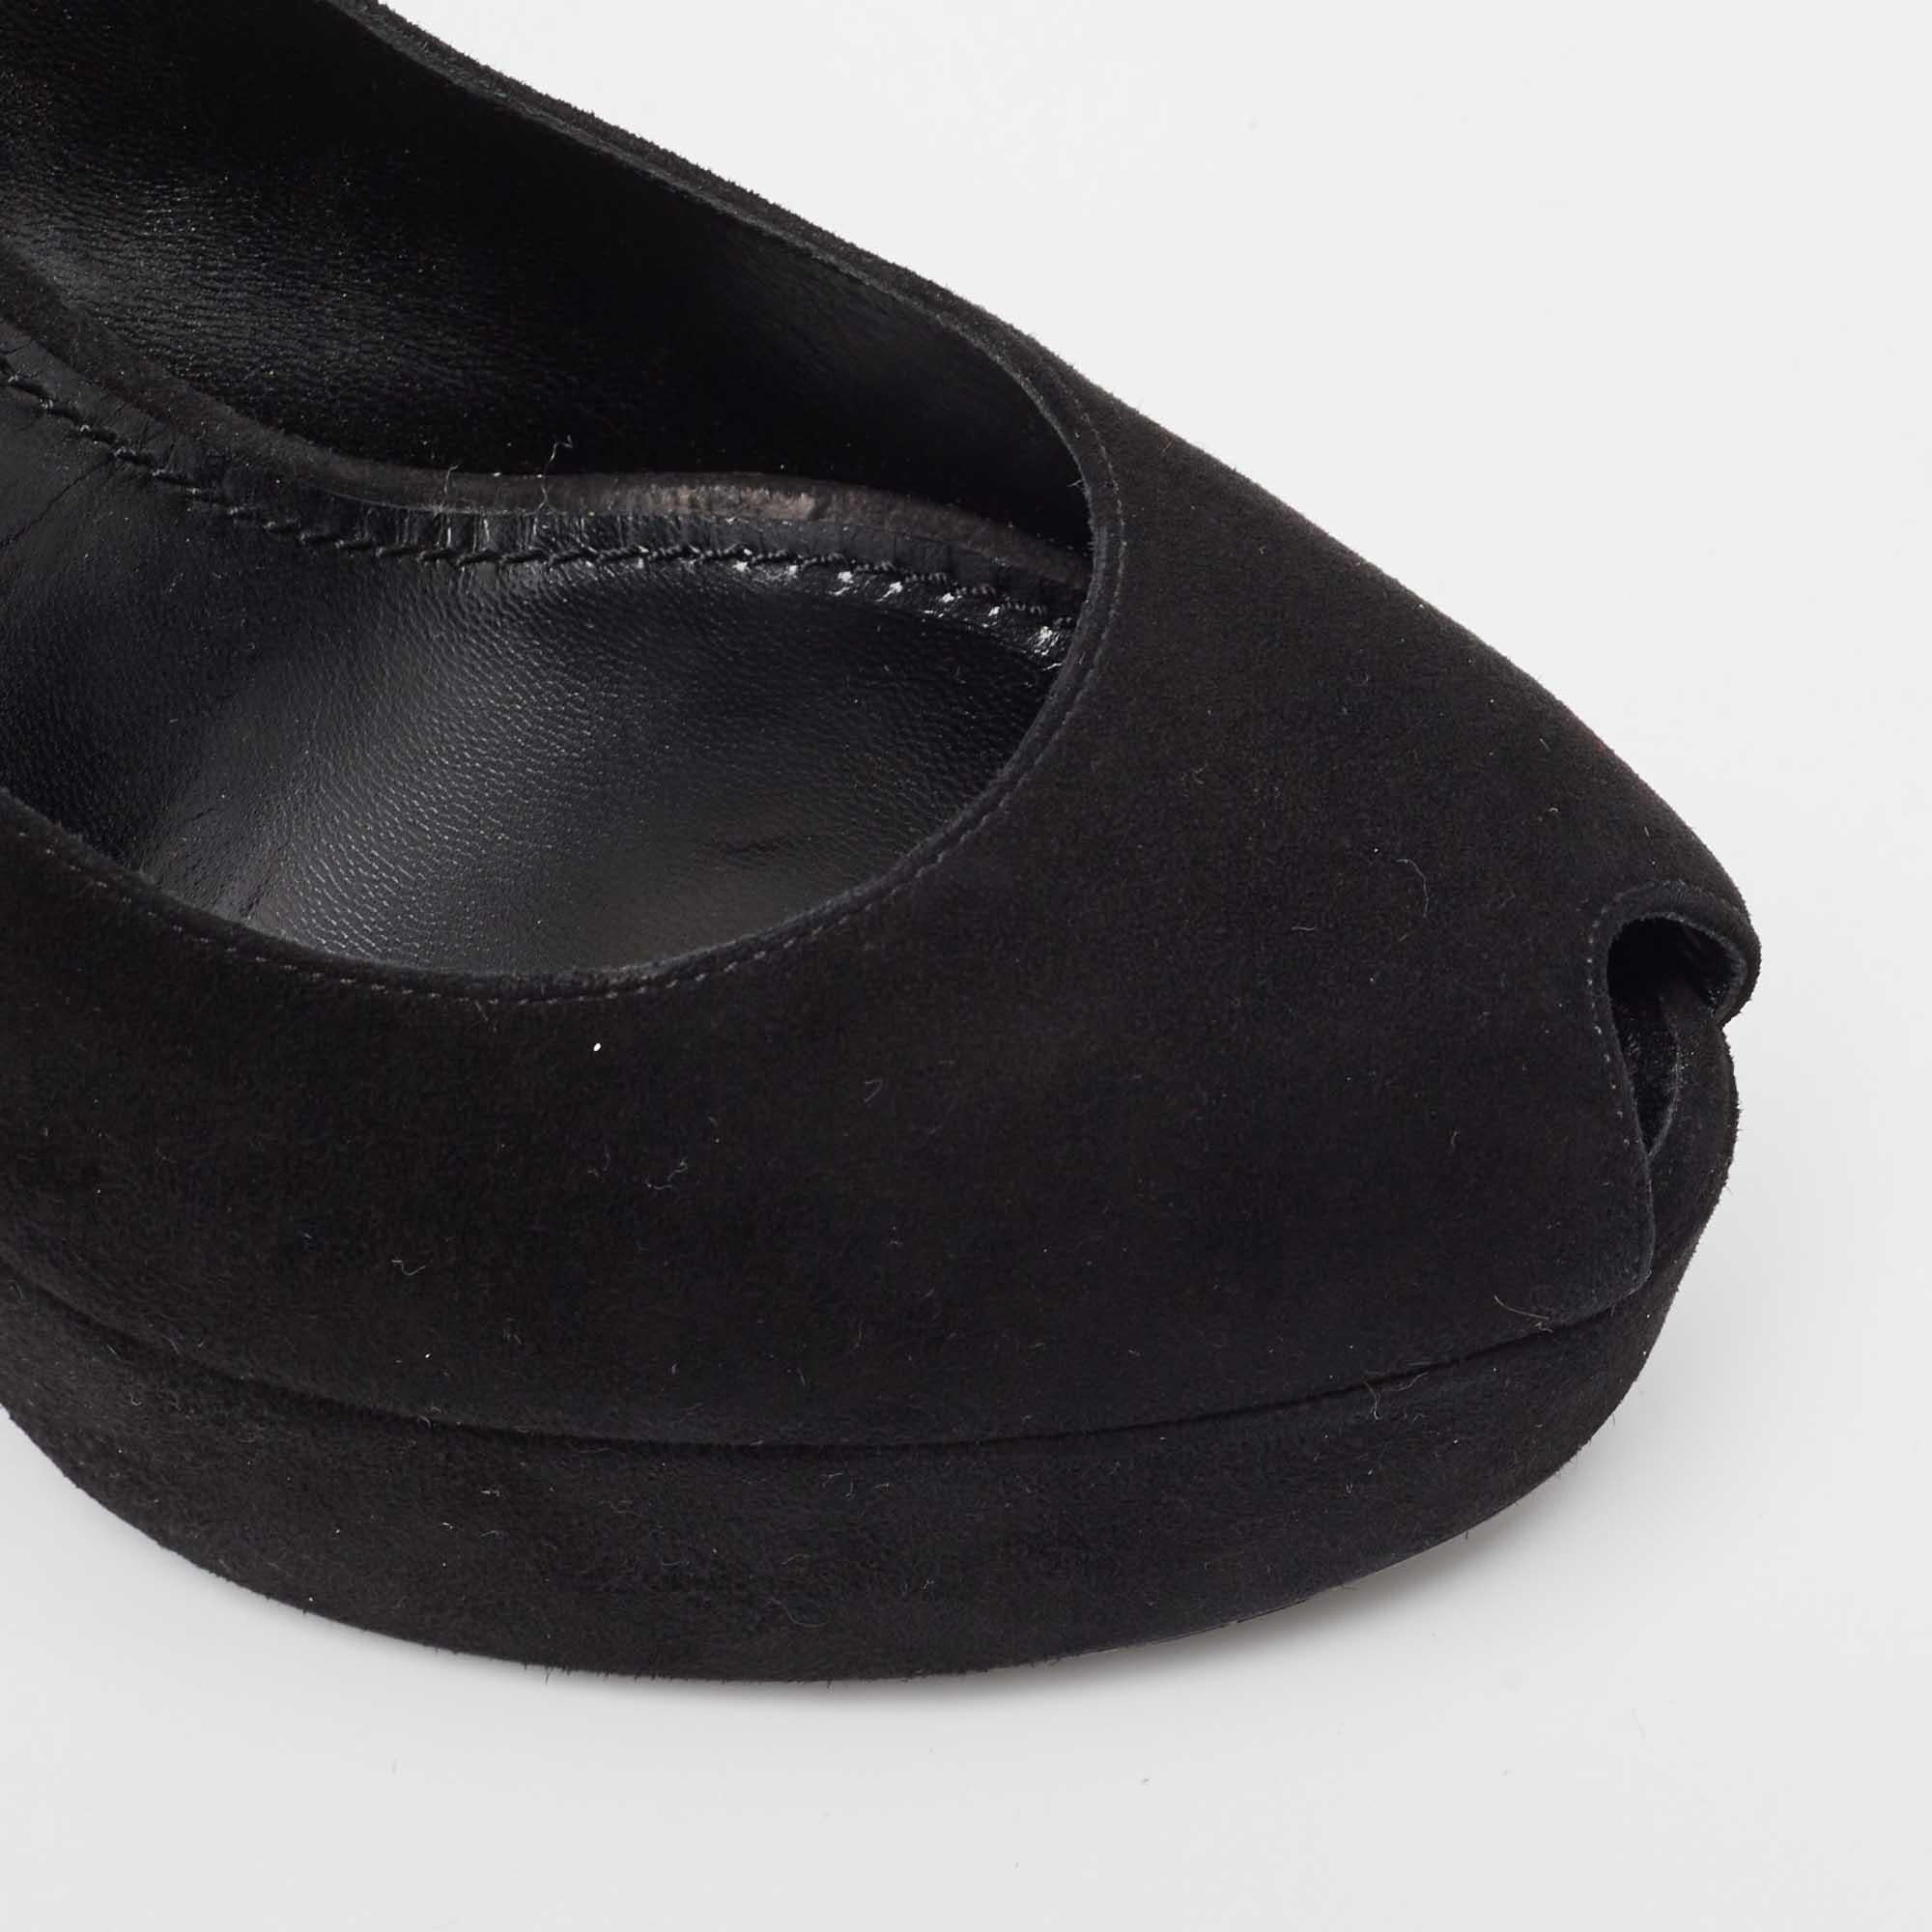 Louis Vuitton Black Suede Ankle Strap Pumps Size 37 For Sale 1